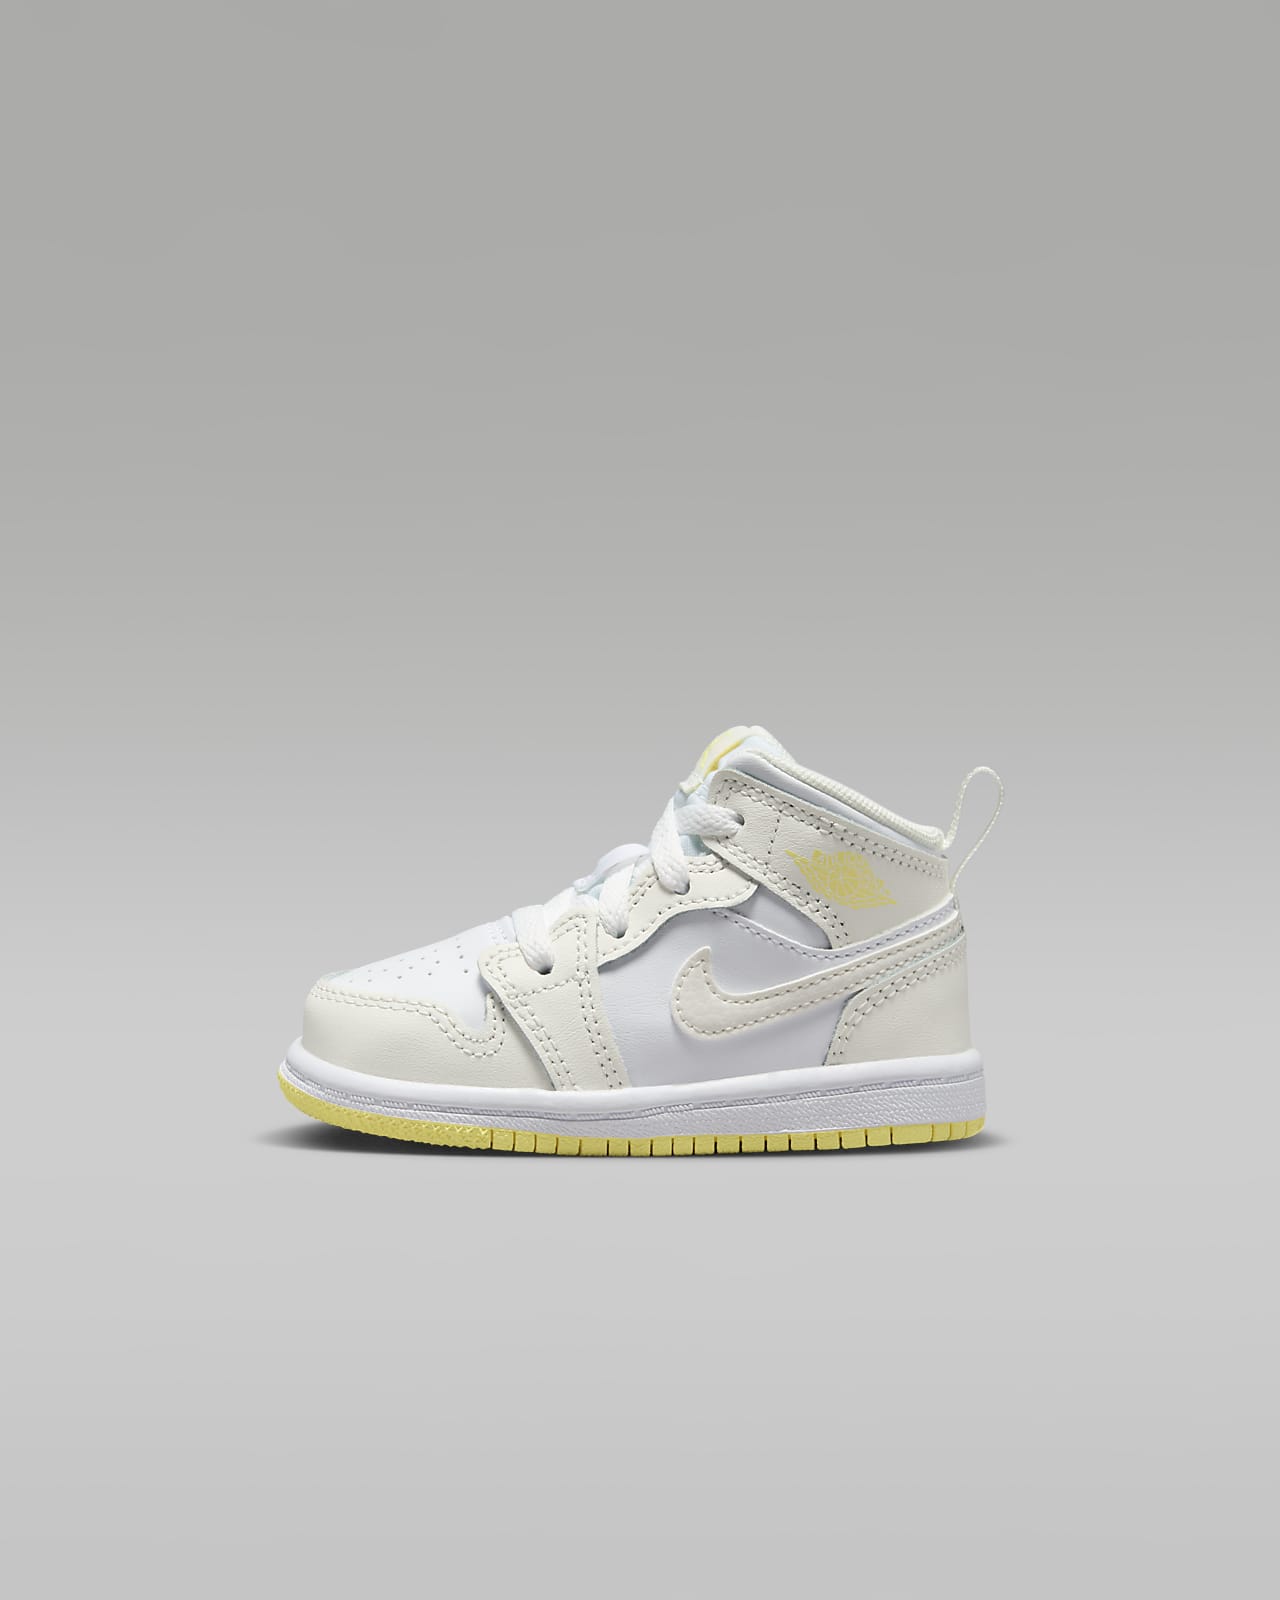 Jordan 1 Mid Baby/Toddler Shoes